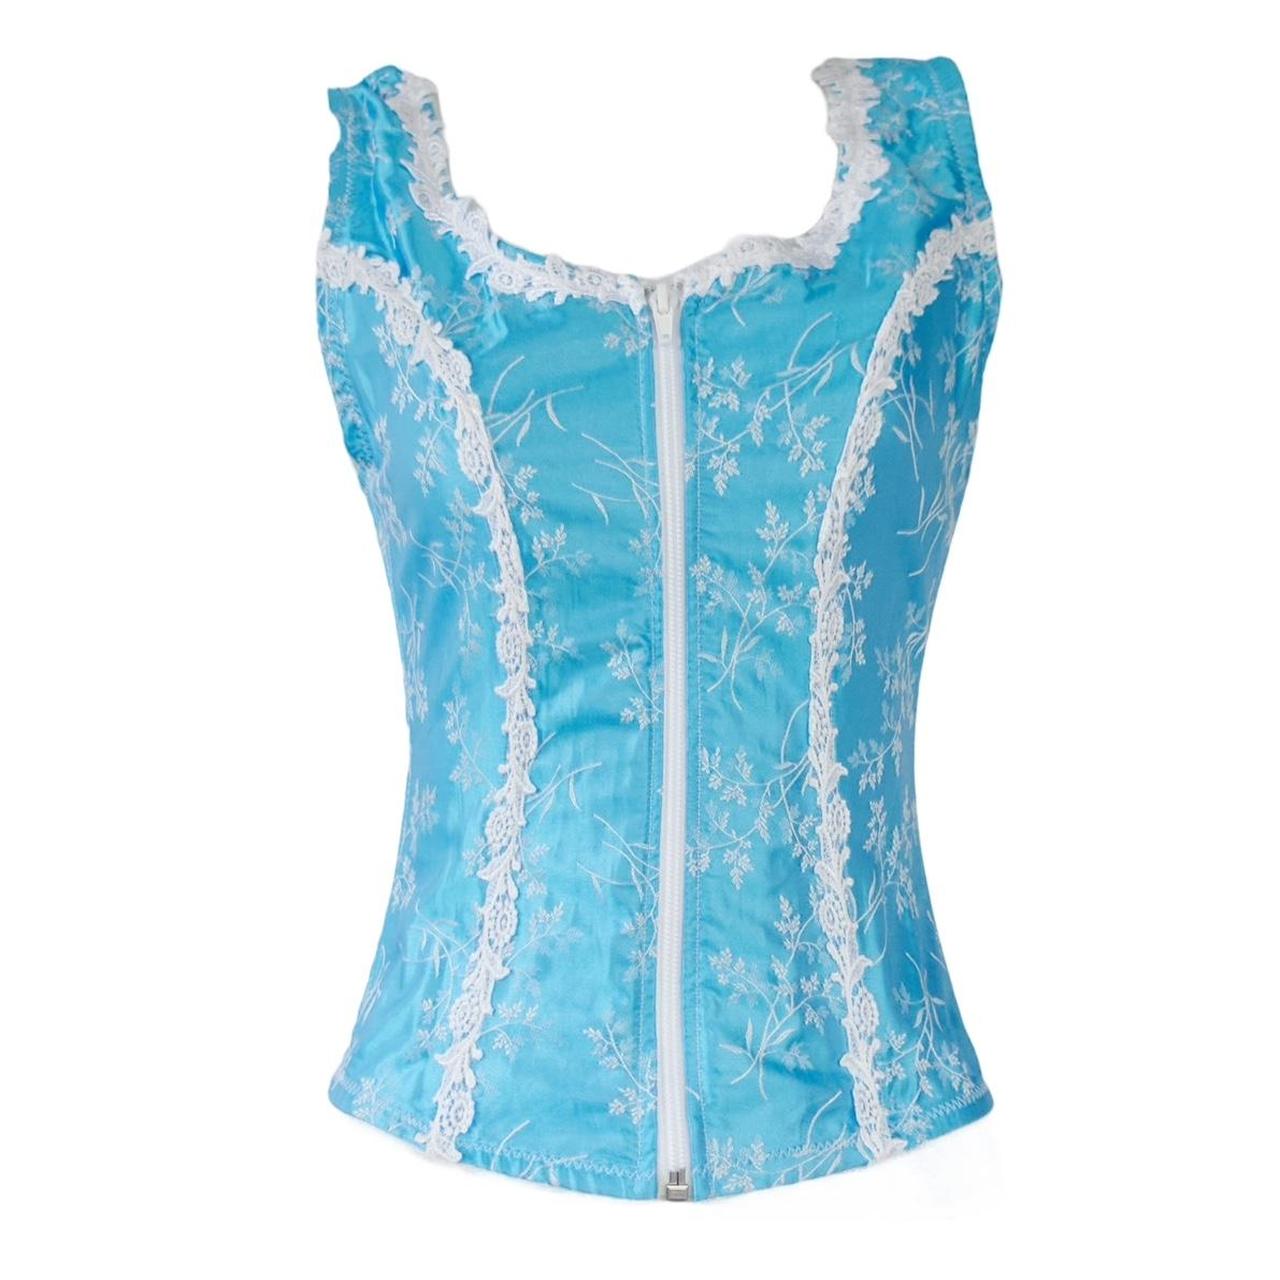 fairycore corset blue white y2k vintage ~ style - Depop